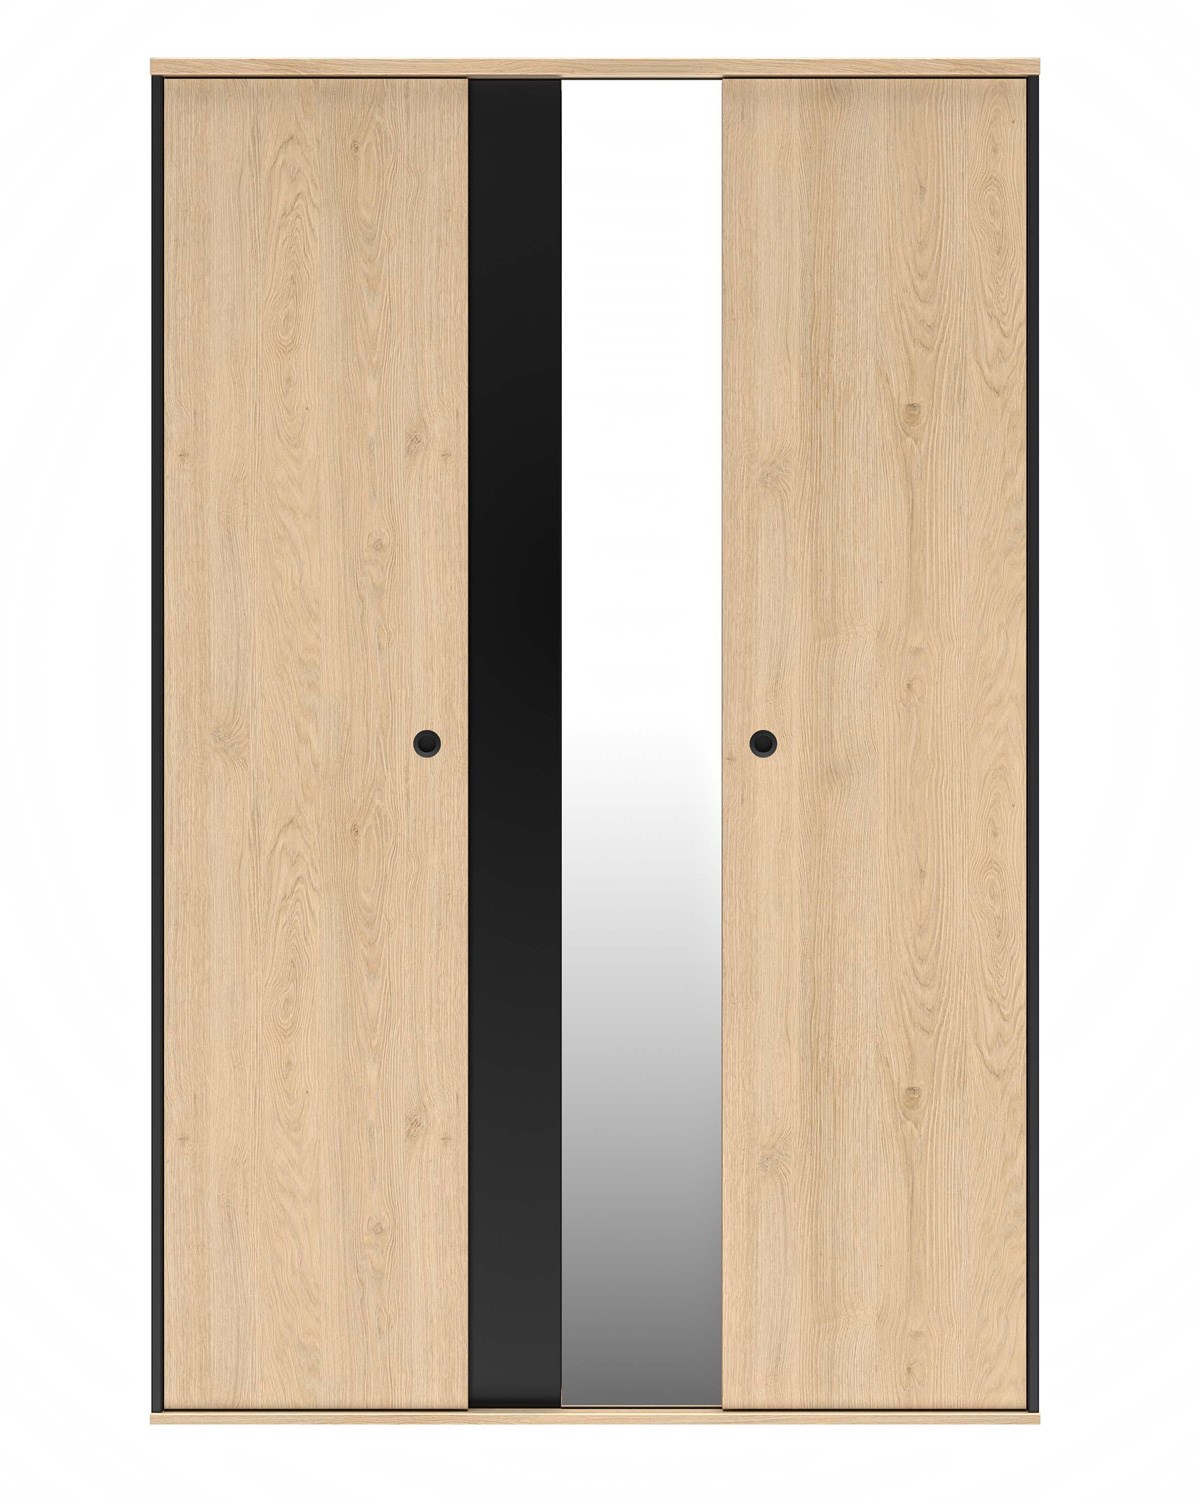 Armoire-3-portes-1-miroir-Duplex-decor-chataignier-naturel-noir-G72180-130cm-front-Gautier